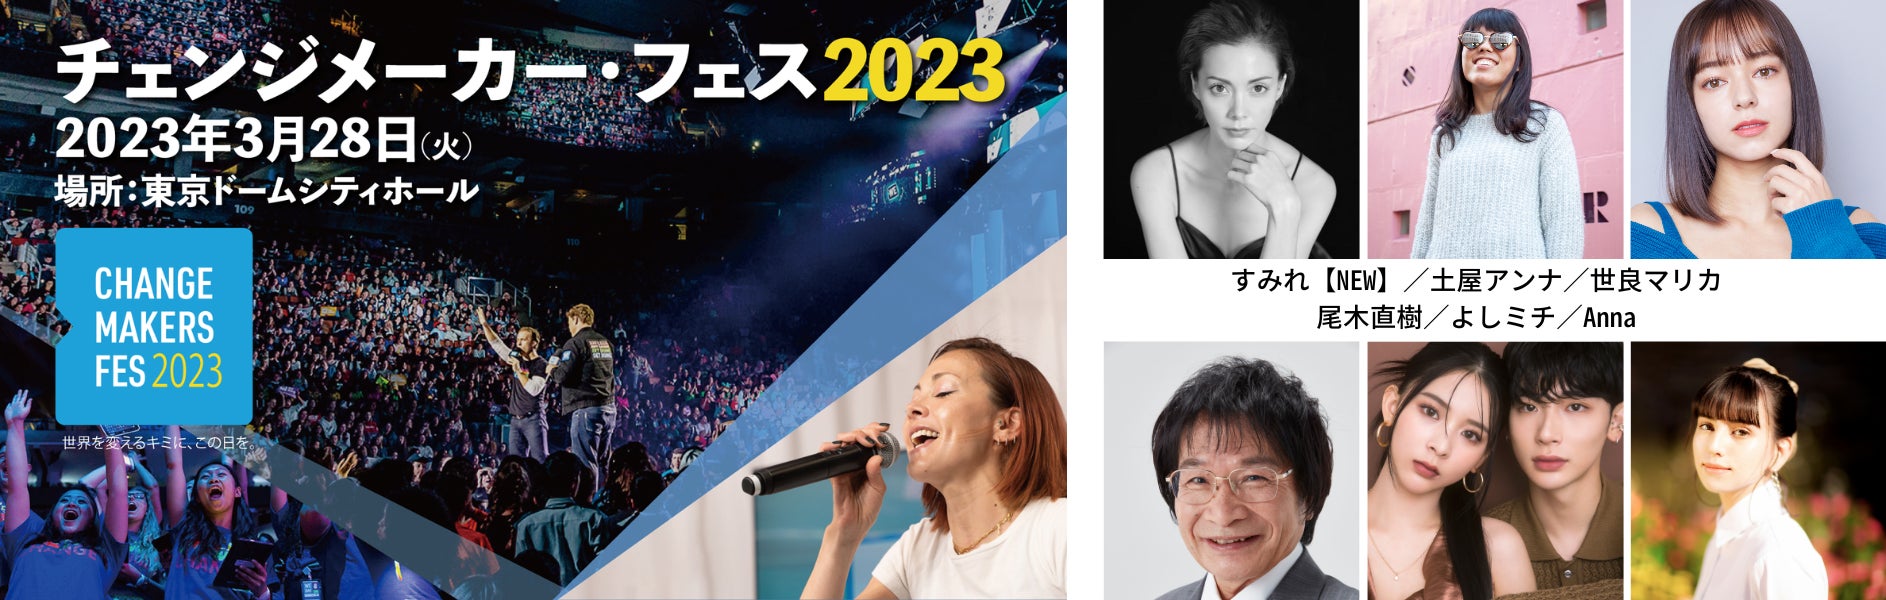 すみれさん、尾木ママ、よしミチ、… 追加出演者 10 組を発表！総勢 30 組の著名人による 社会貢献（SDGs）×エンターテインメントイベントのサブ画像1